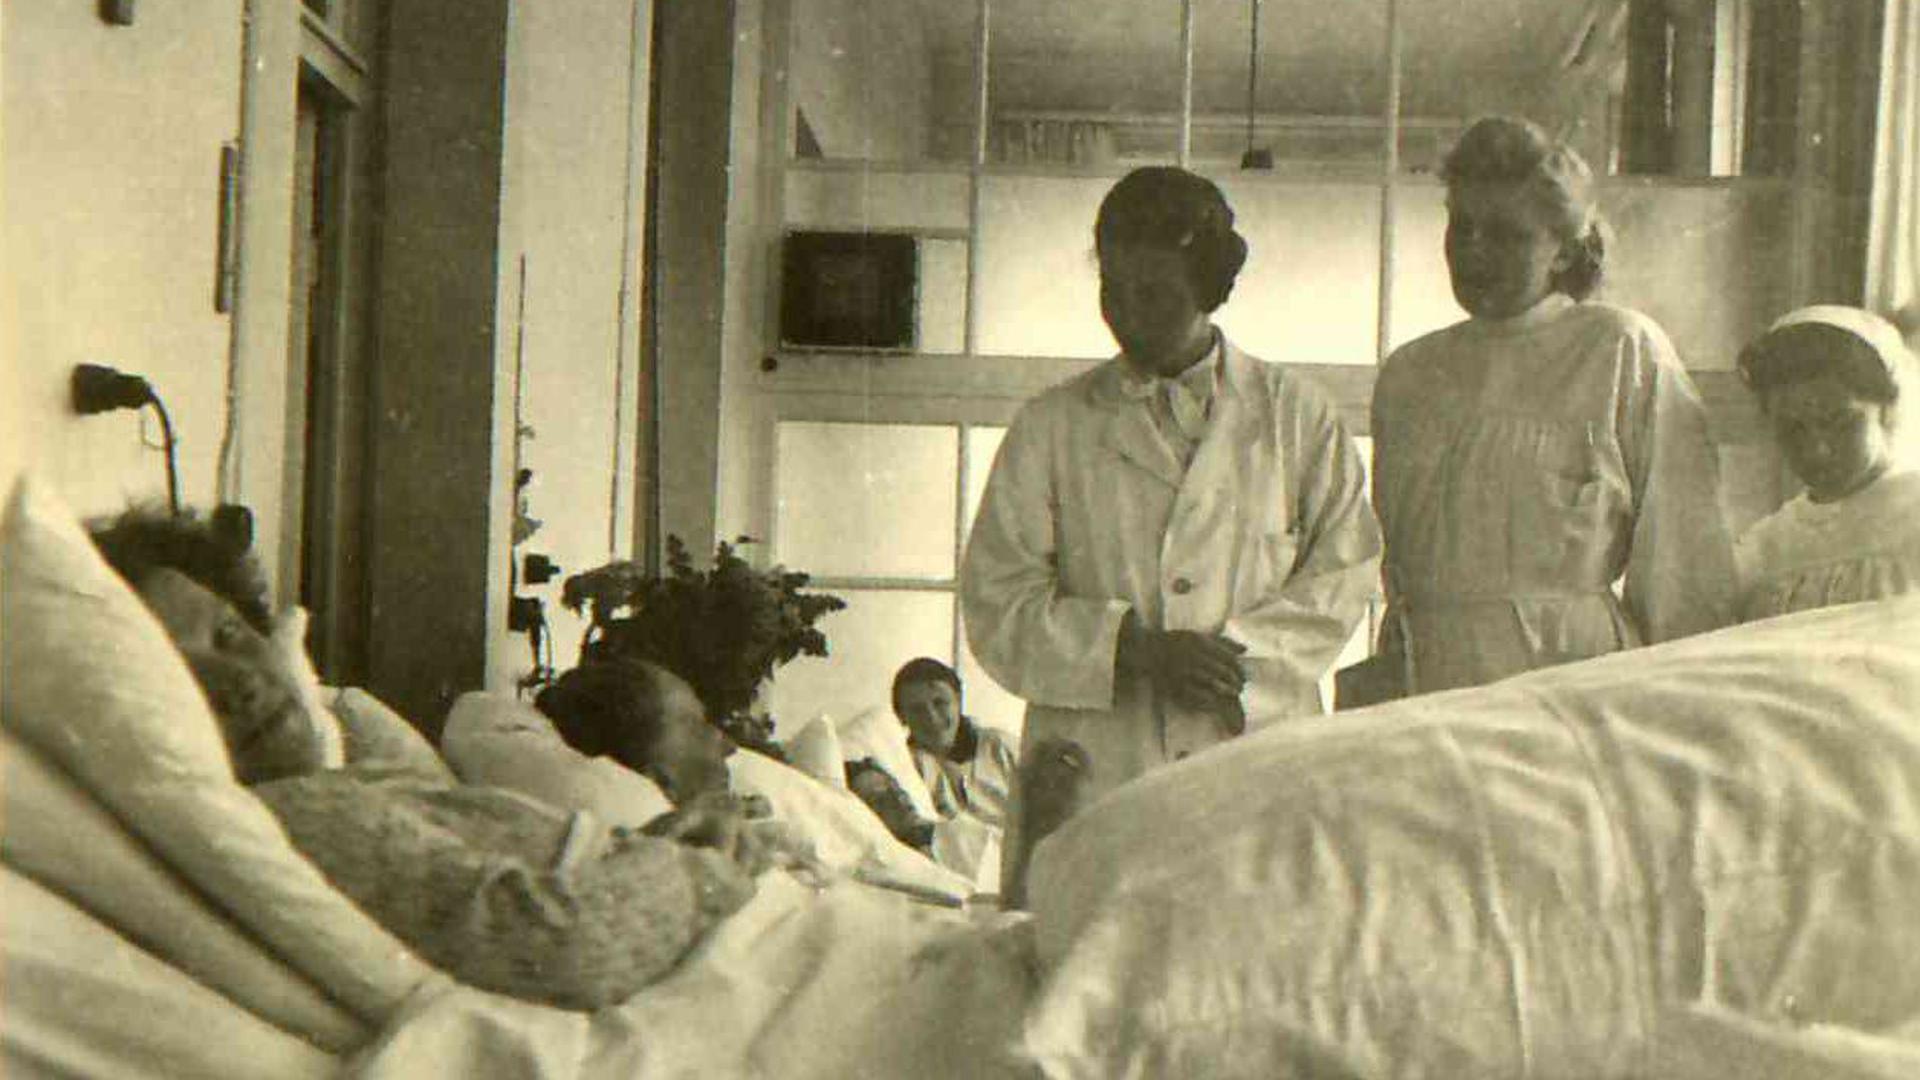 Blick in den Krankensaal: die ehemalige Liegehalle im Acherner Krankenhaus um 1940